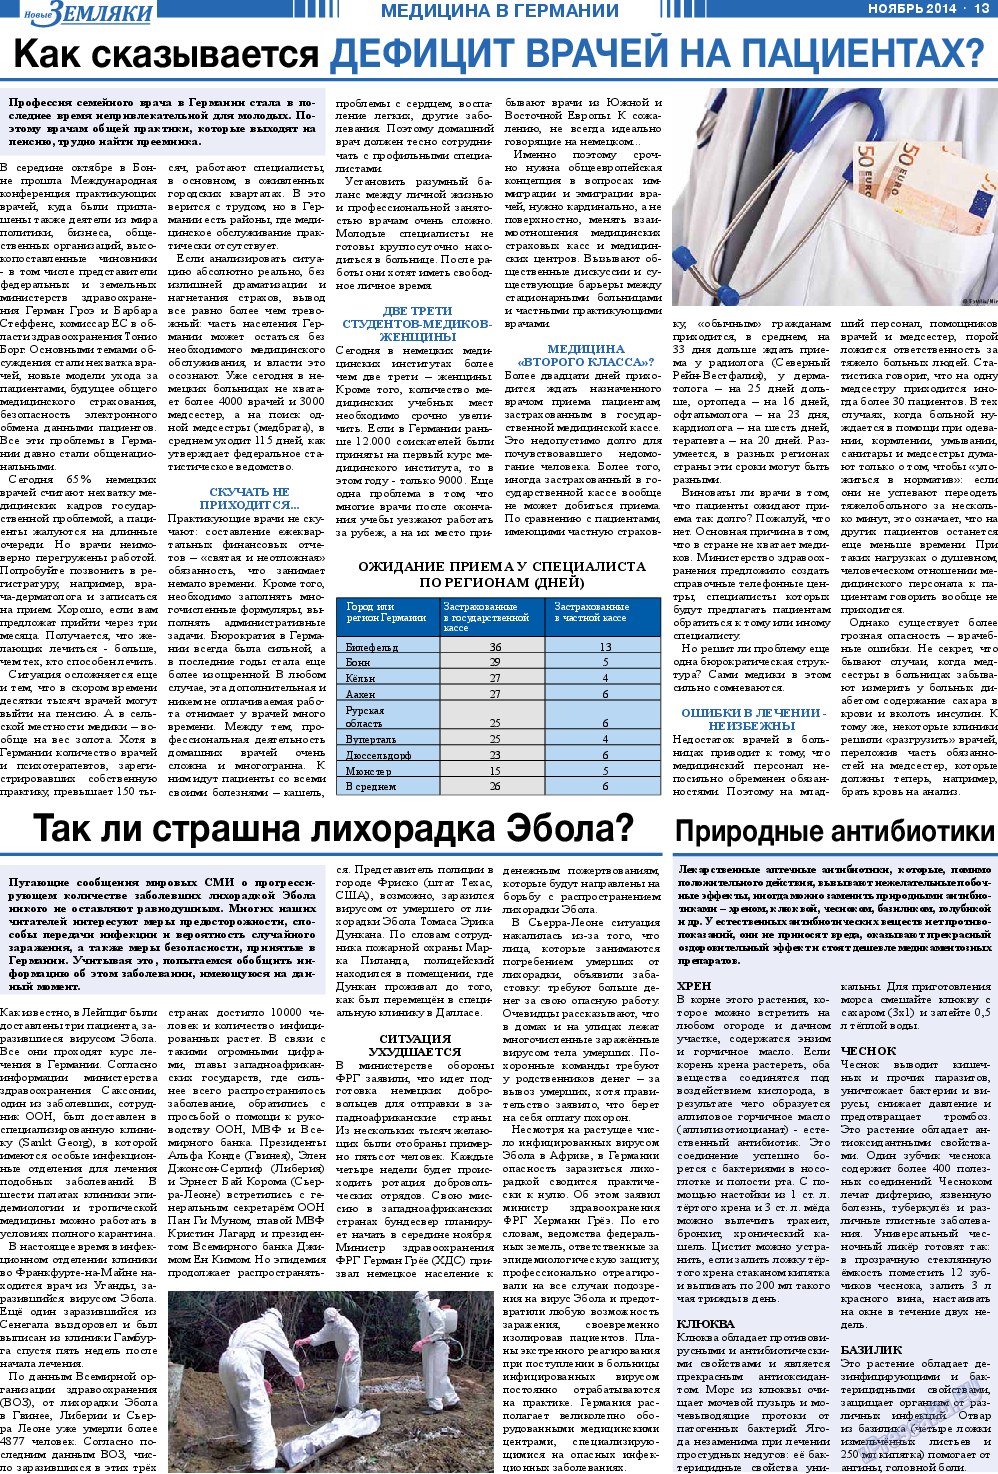 Новые Земляки, газета. 2014 №11 стр.13